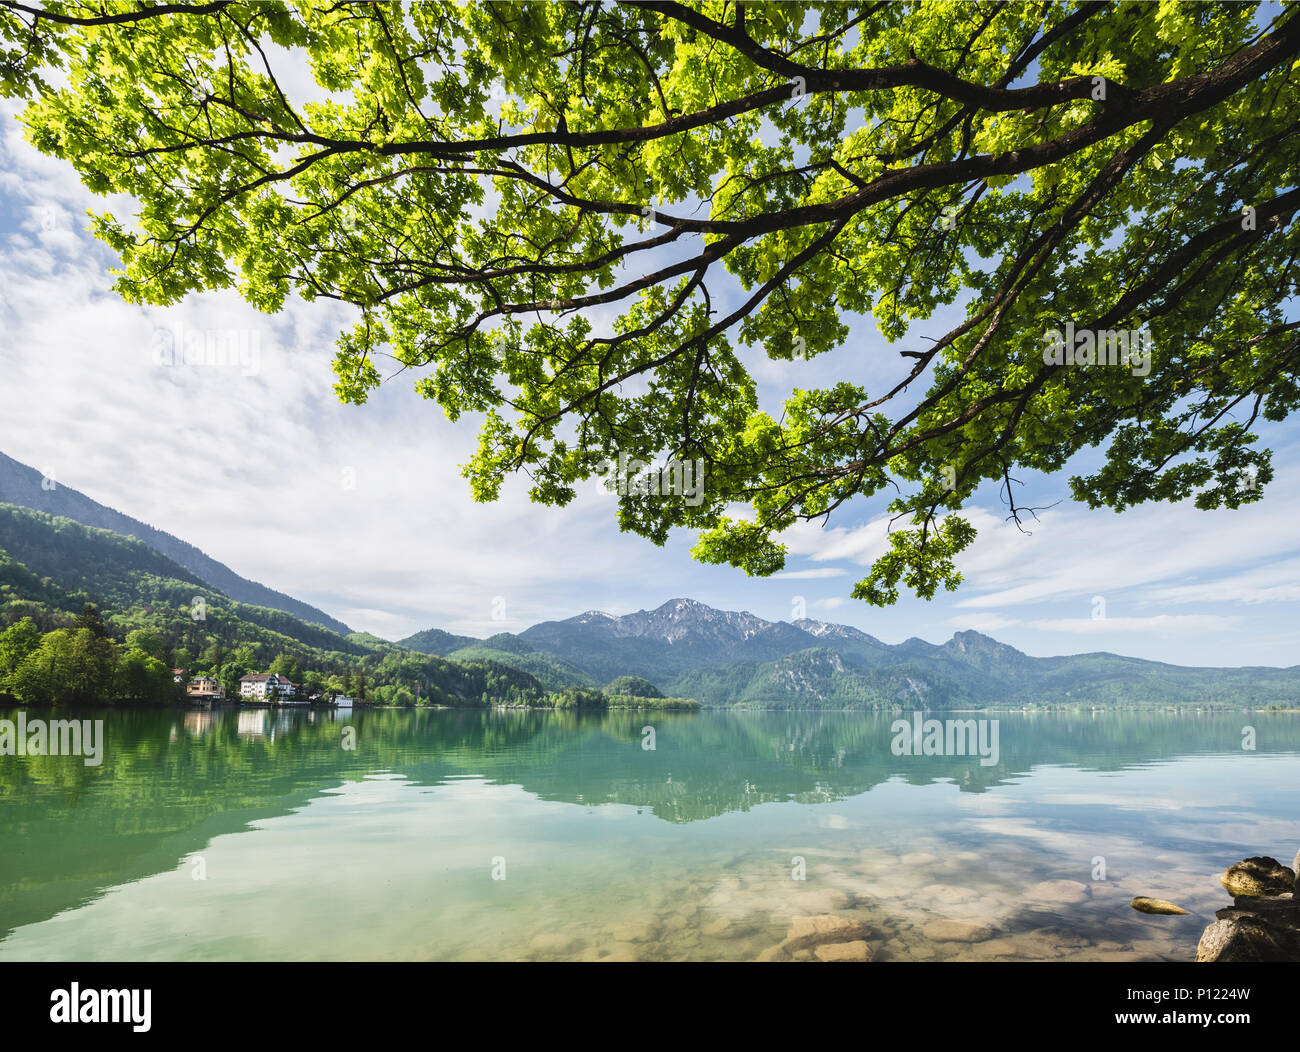 Colore verde brillante albero canopy di alberi sul panorama del Lago Kochelsee e Monte Herzogstand, Baviera, Germania Foto Stock